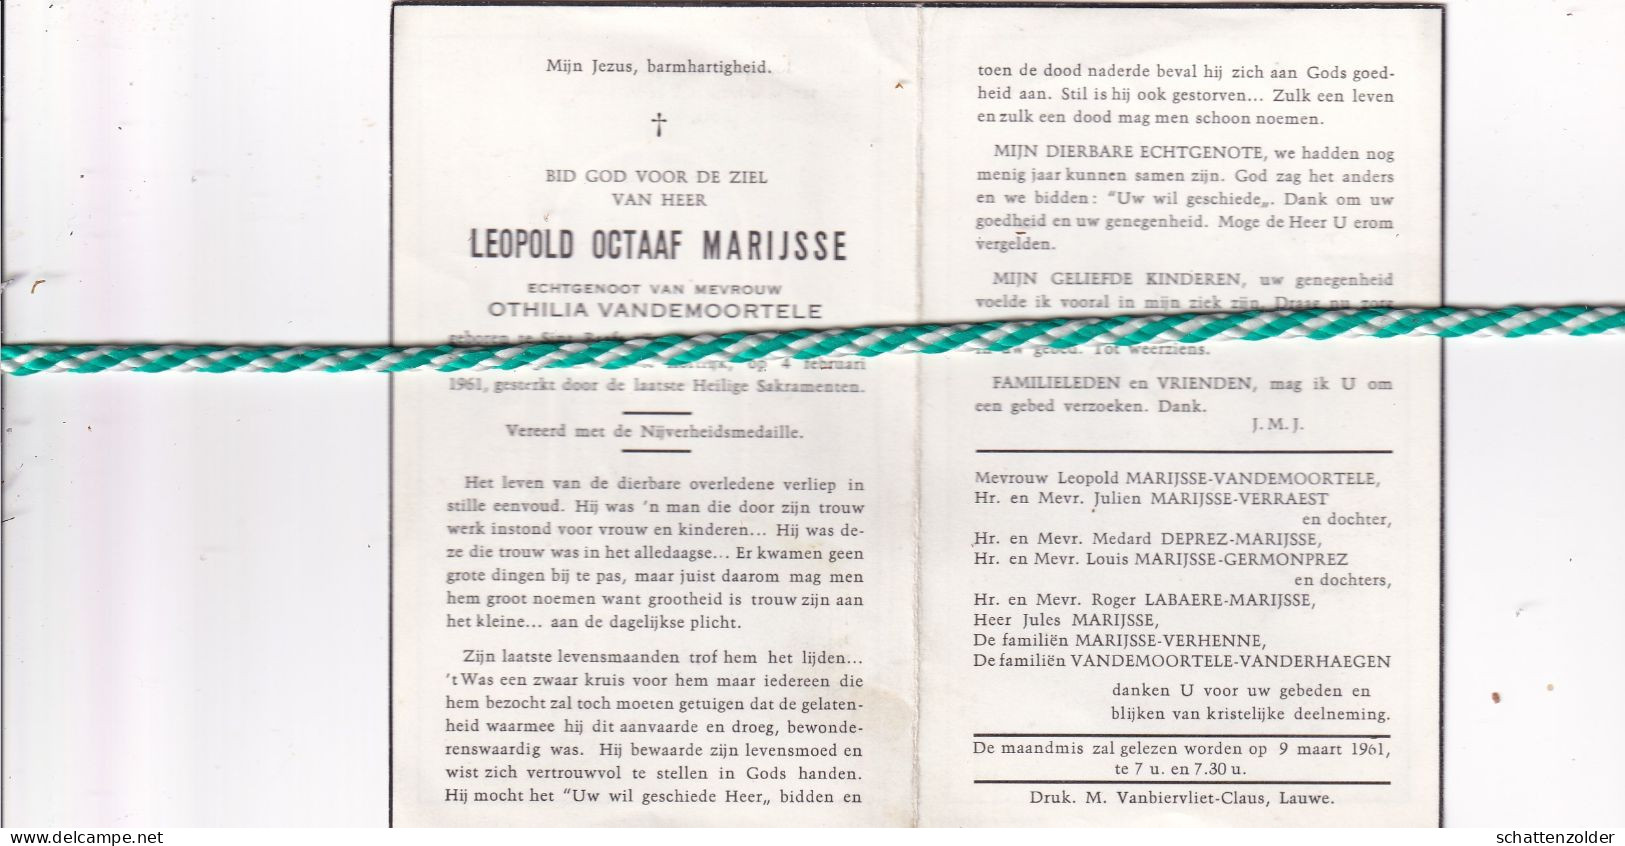 Leopold Octaaf Marijsse-Vandemoortele, Sint-Baafs-Vijve 1896, Kortrijk 1961 - Obituary Notices